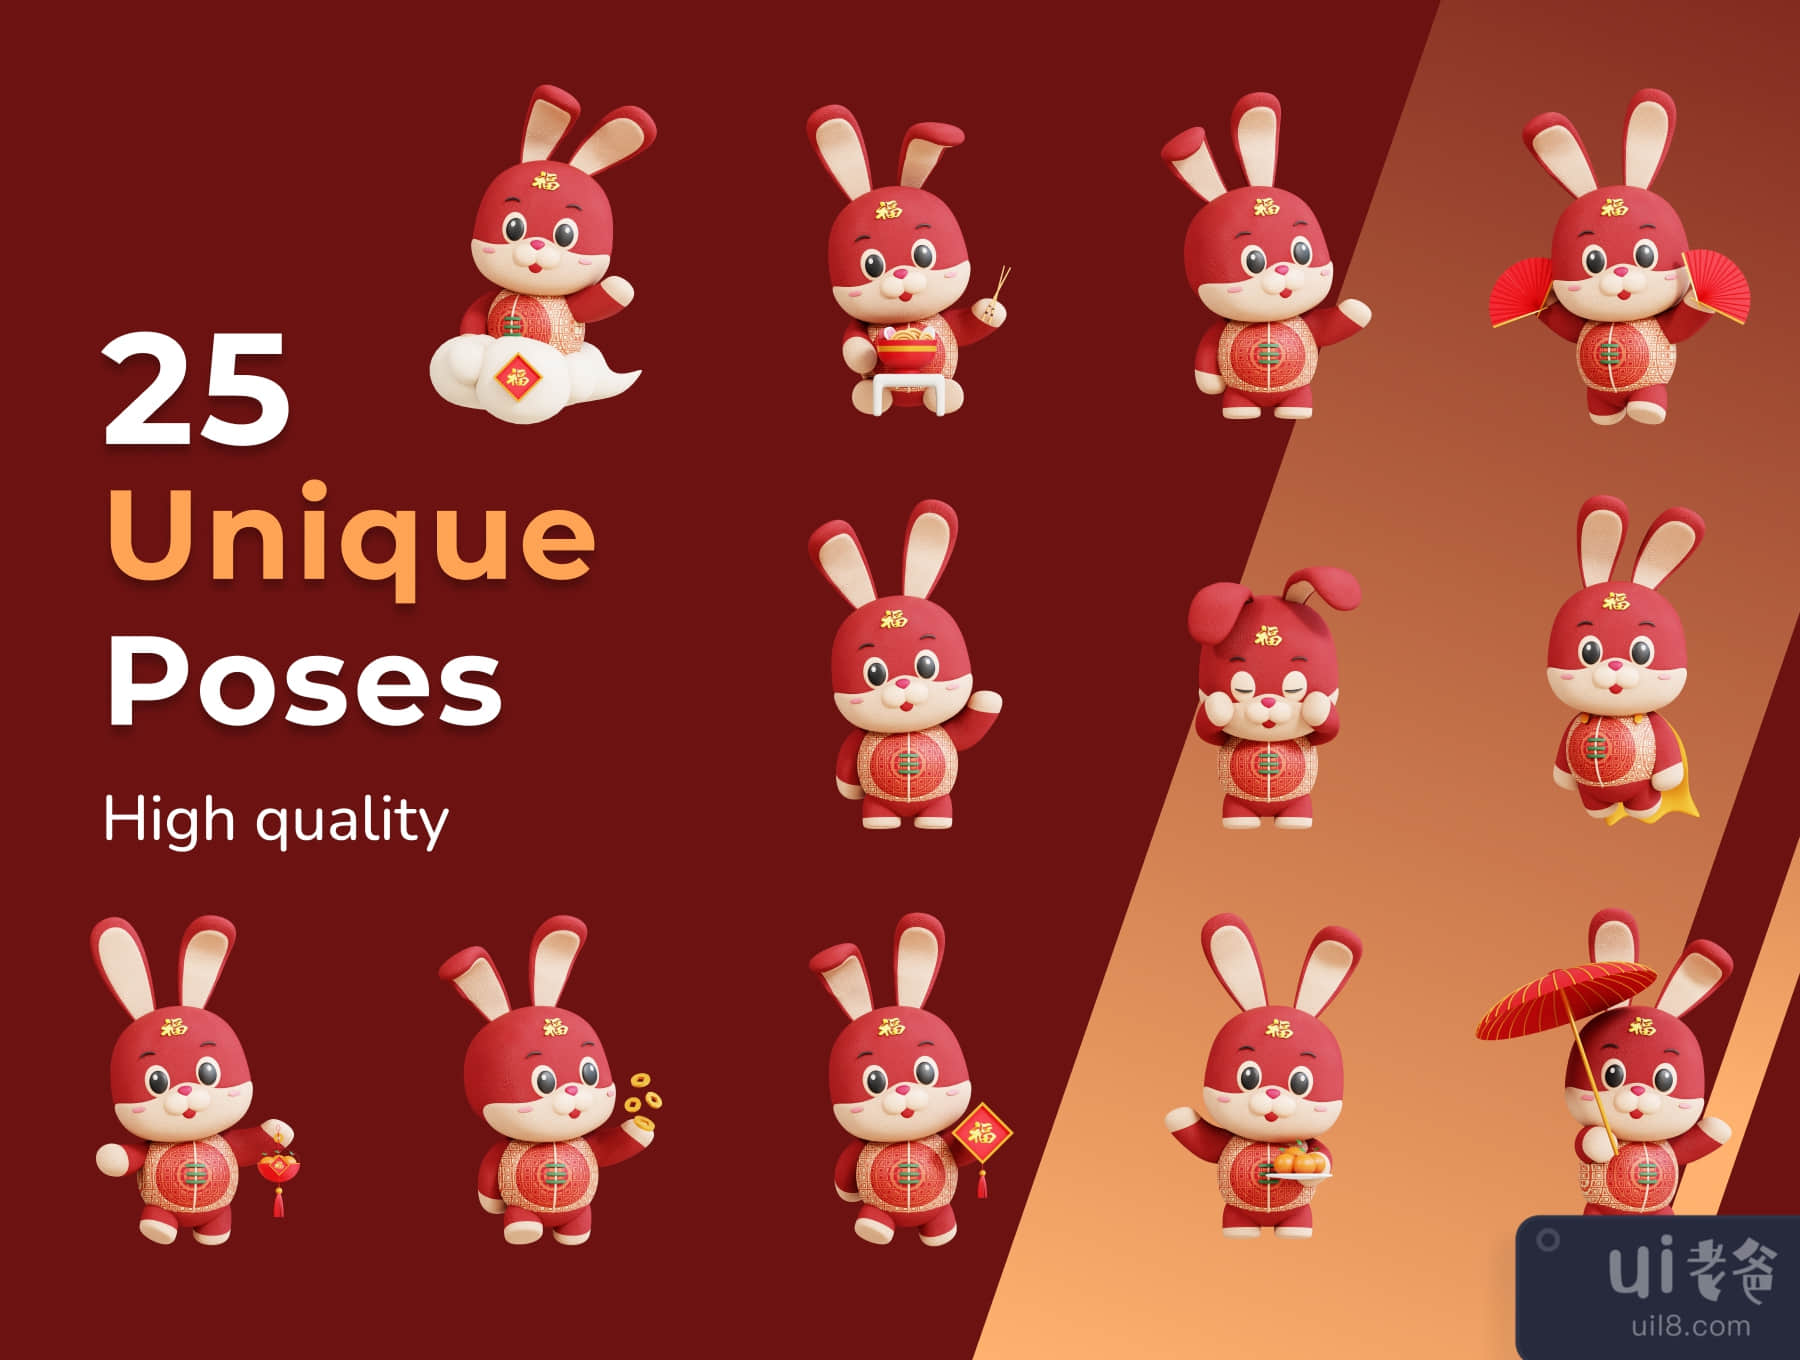 三维中国兔子吉祥物 (3D Chinese Rabbit Mascot)插图4